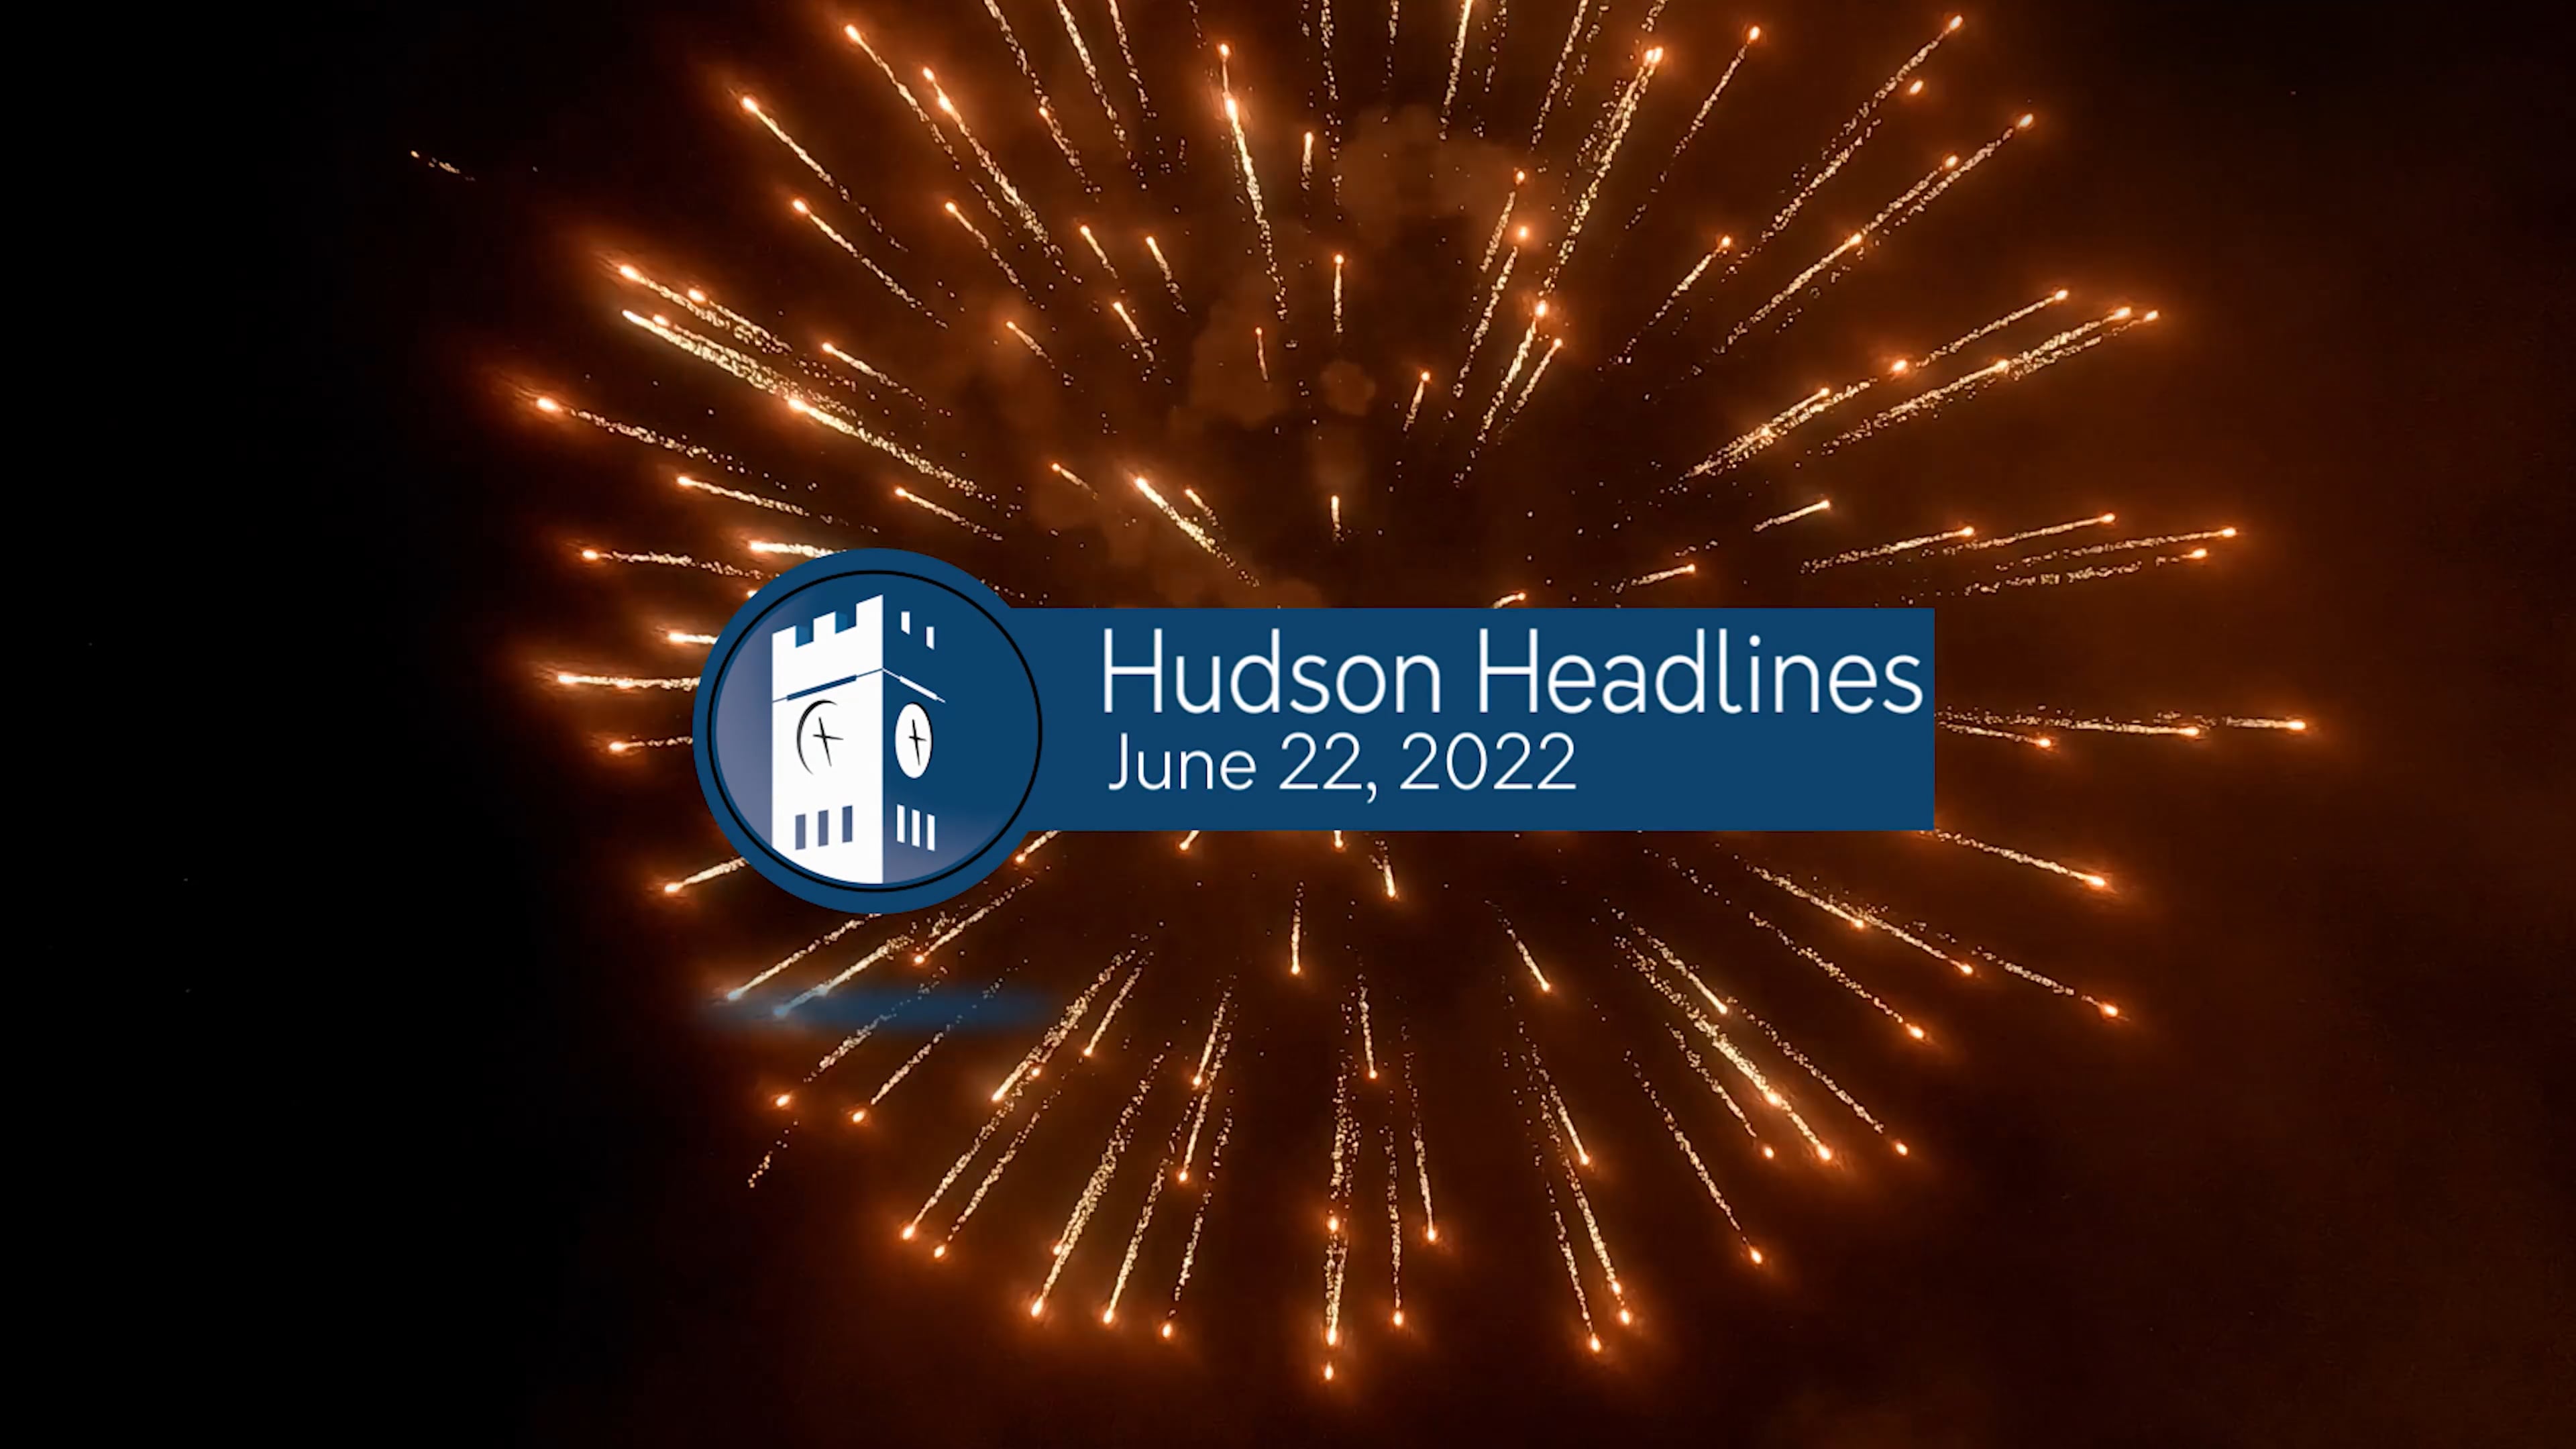 Hudson Headlines - 2022 Independence Day Fireworks Celebration